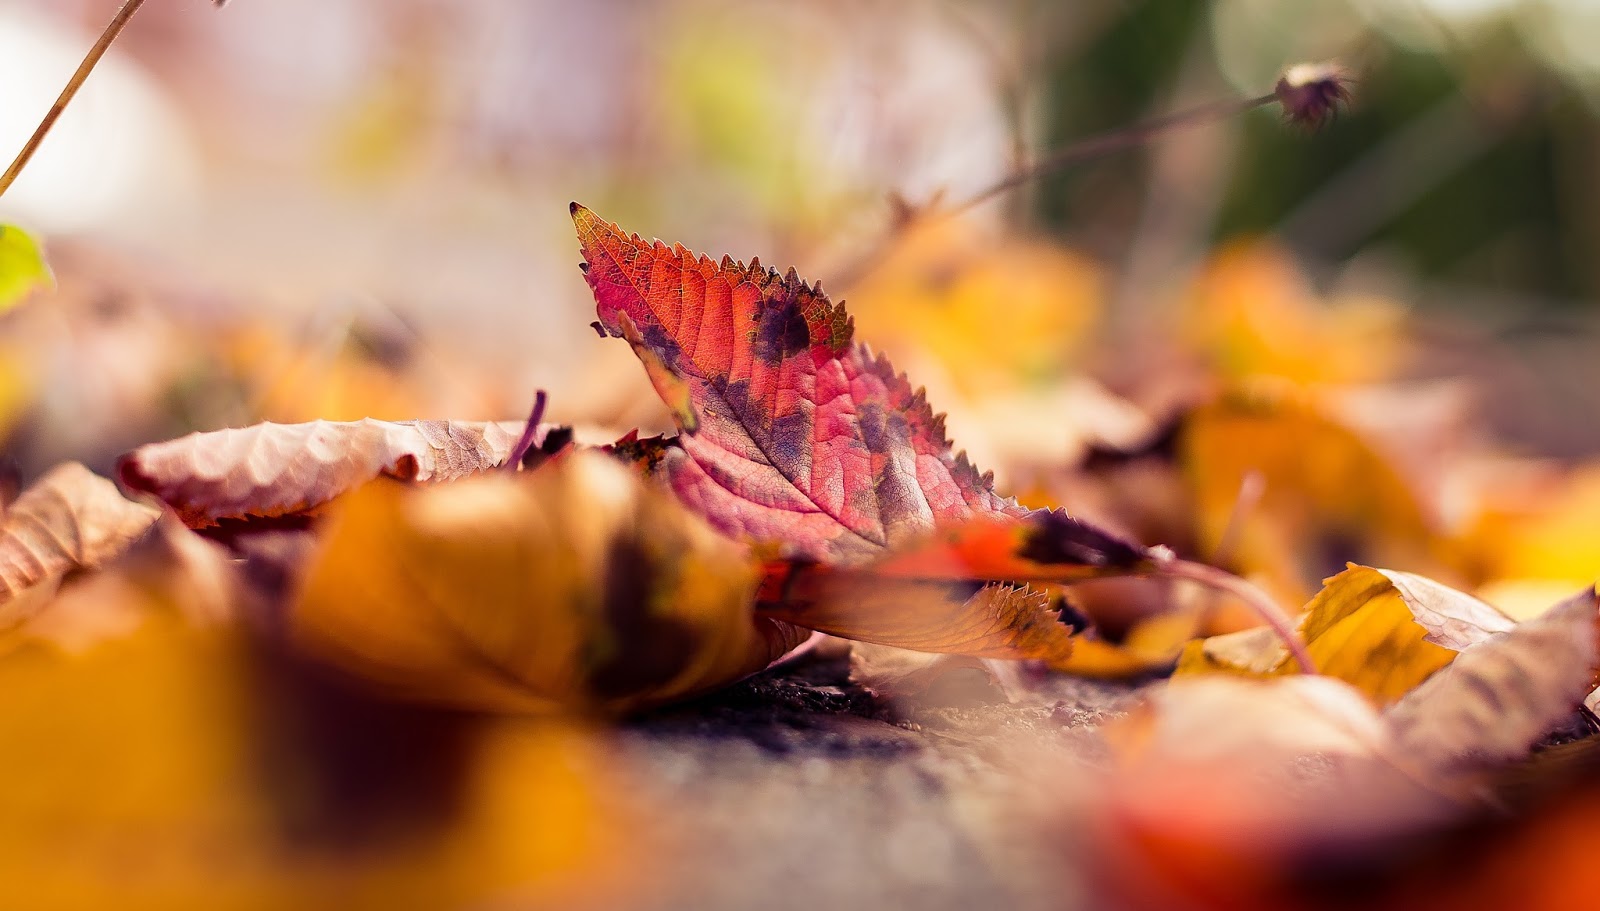 Autumn Leaves, Colors, Macro Photography, Desktop, - Macro Photography Autumn Leaves - HD Wallpaper 